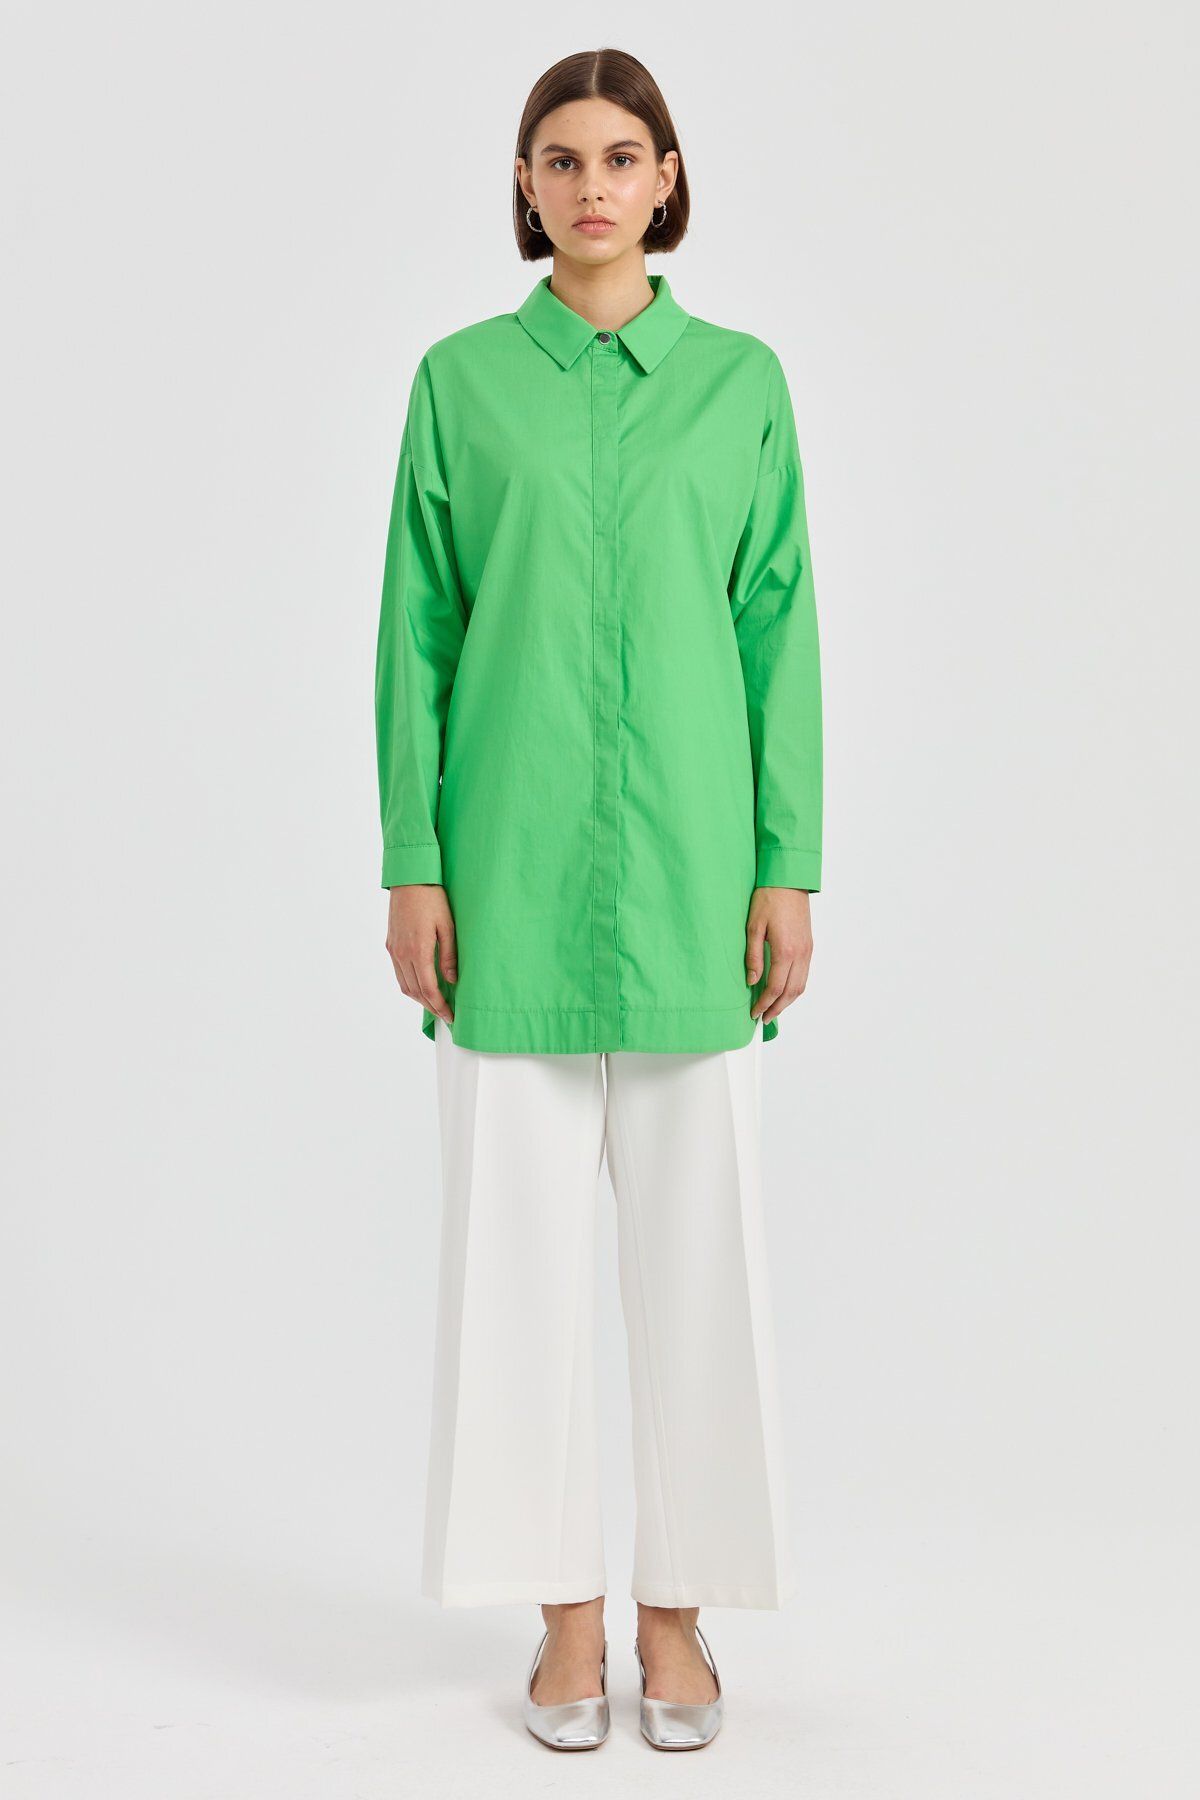 Nihan Yanları Metal Düğmeli Gömlek Tunik Benetton Yeşili